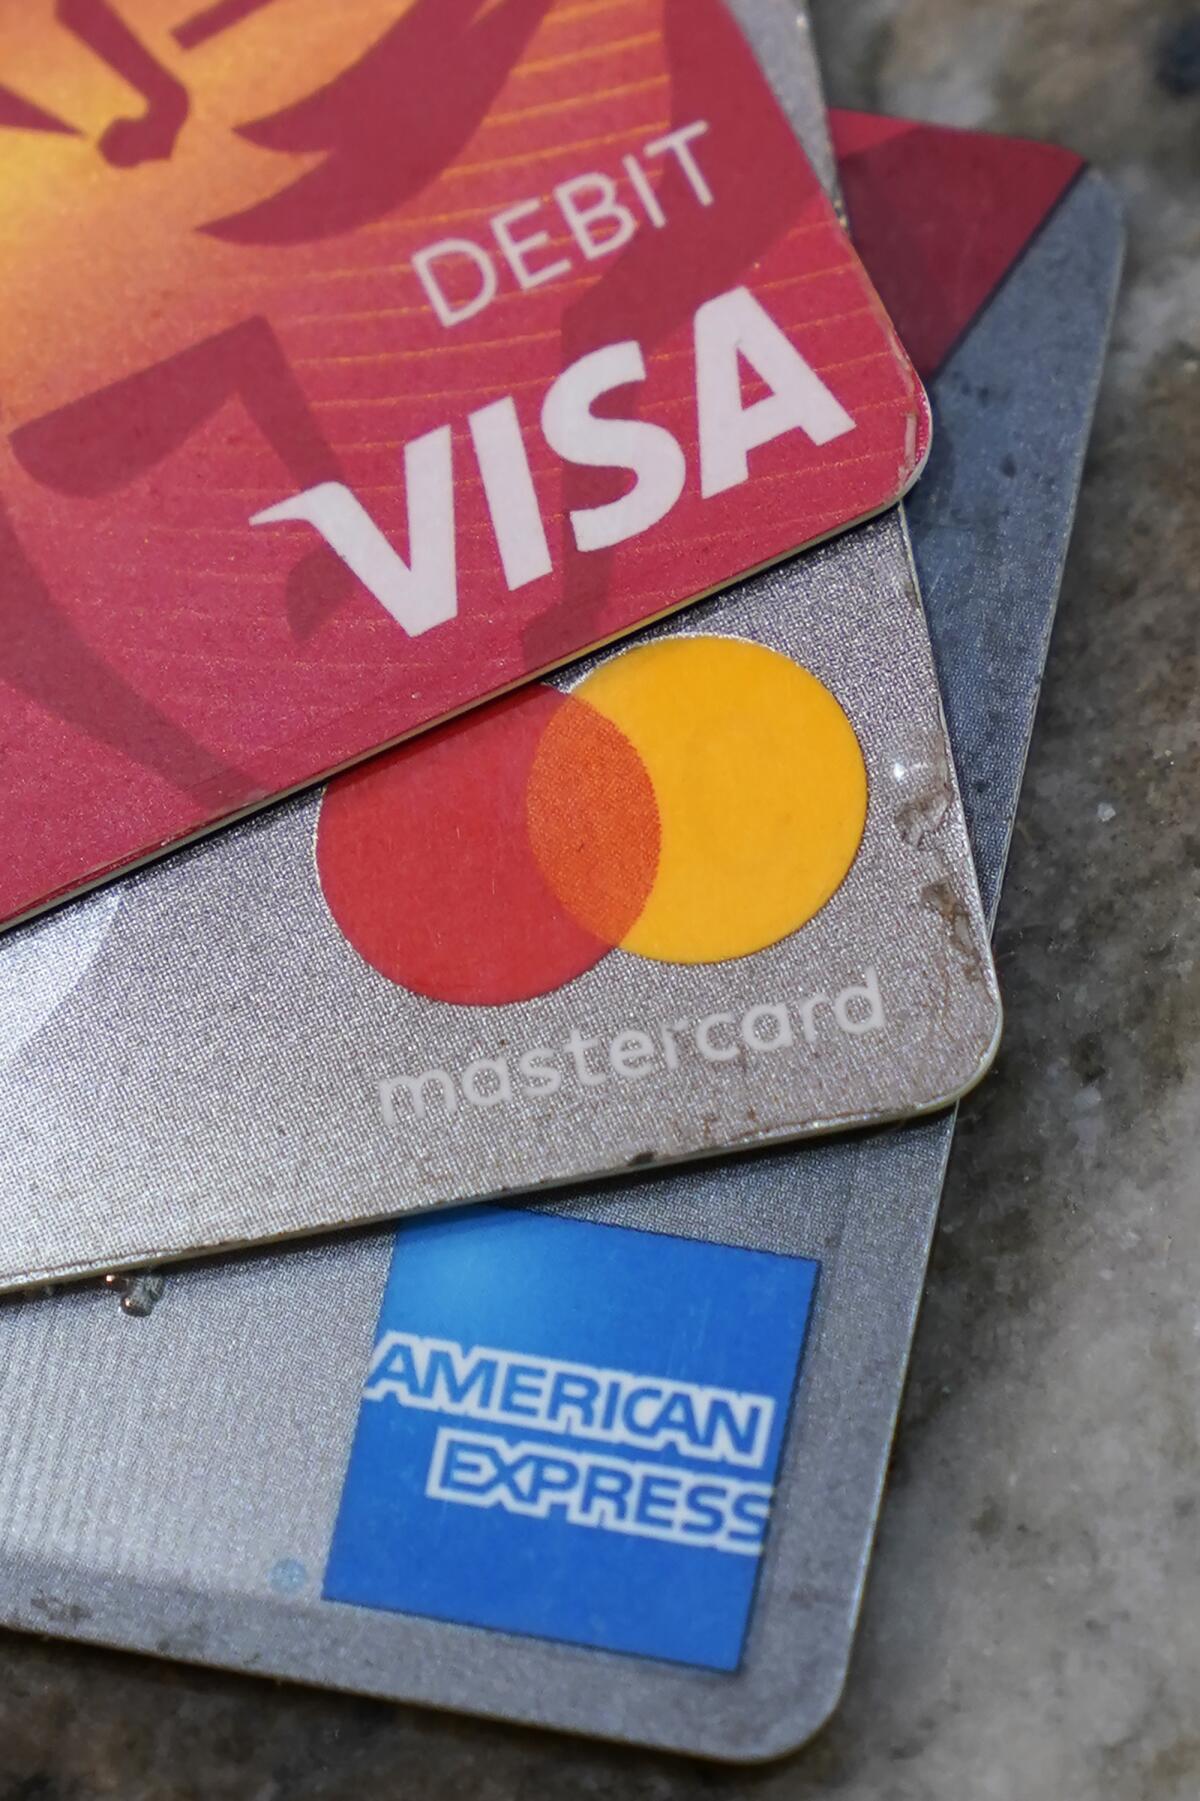 American Express, Visa and Mastercard cards.